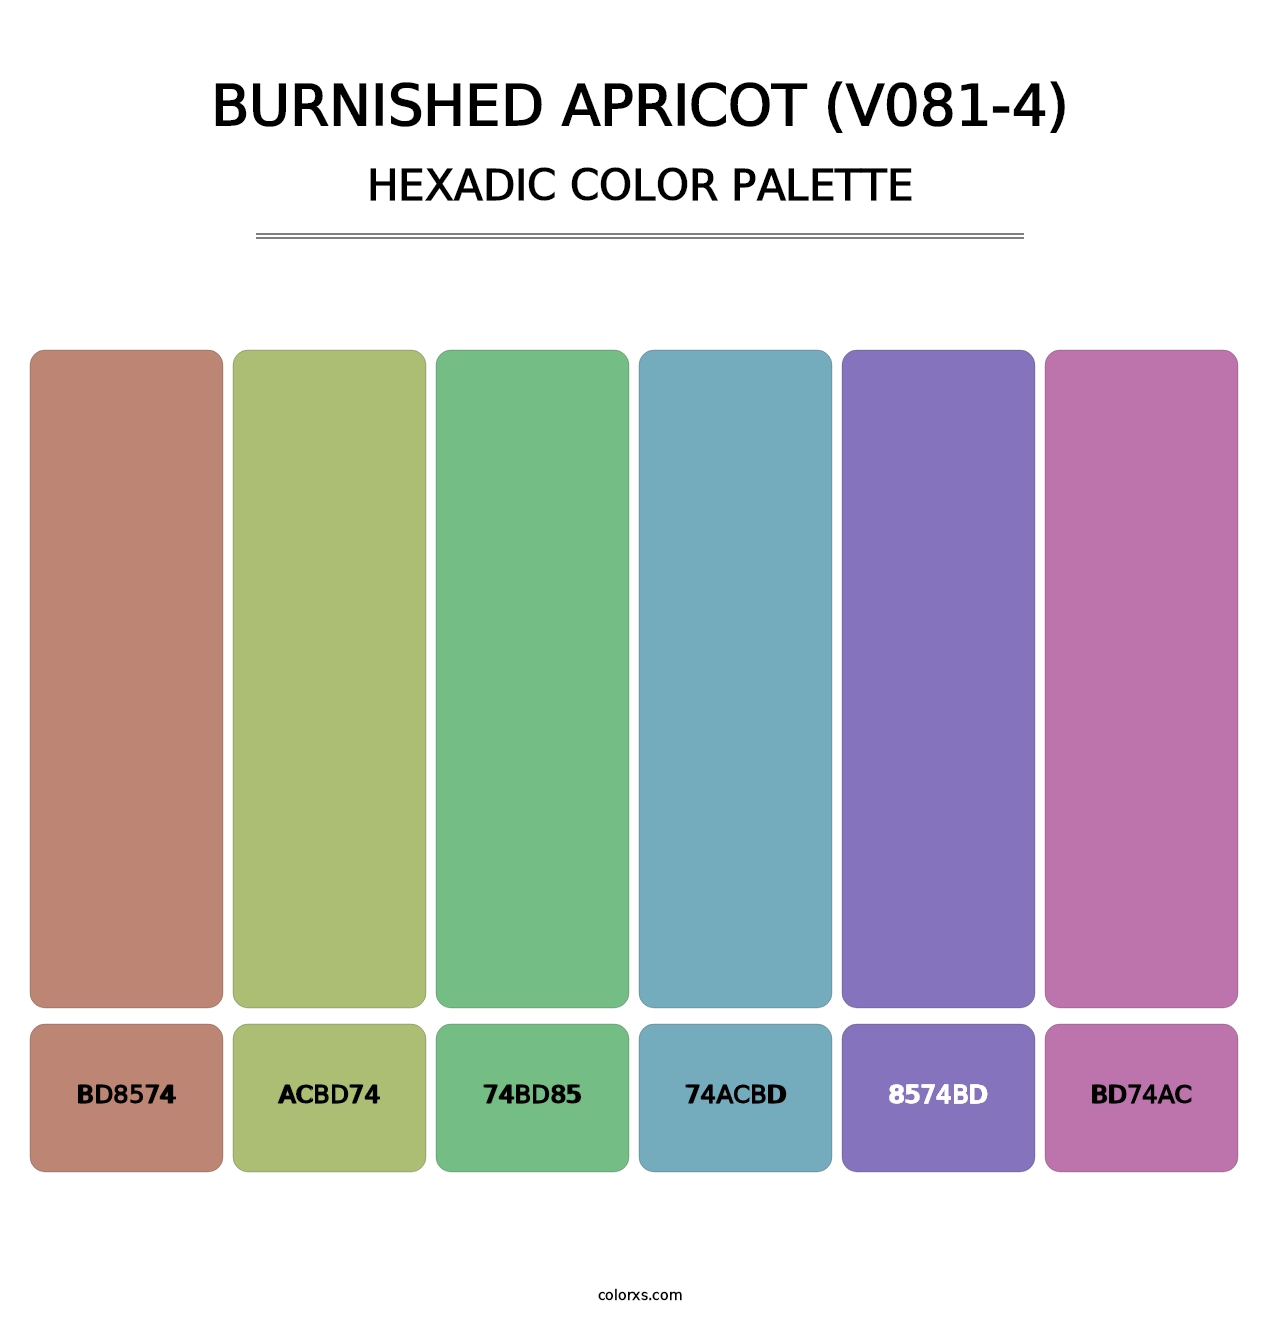 Burnished Apricot (V081-4) - Hexadic Color Palette